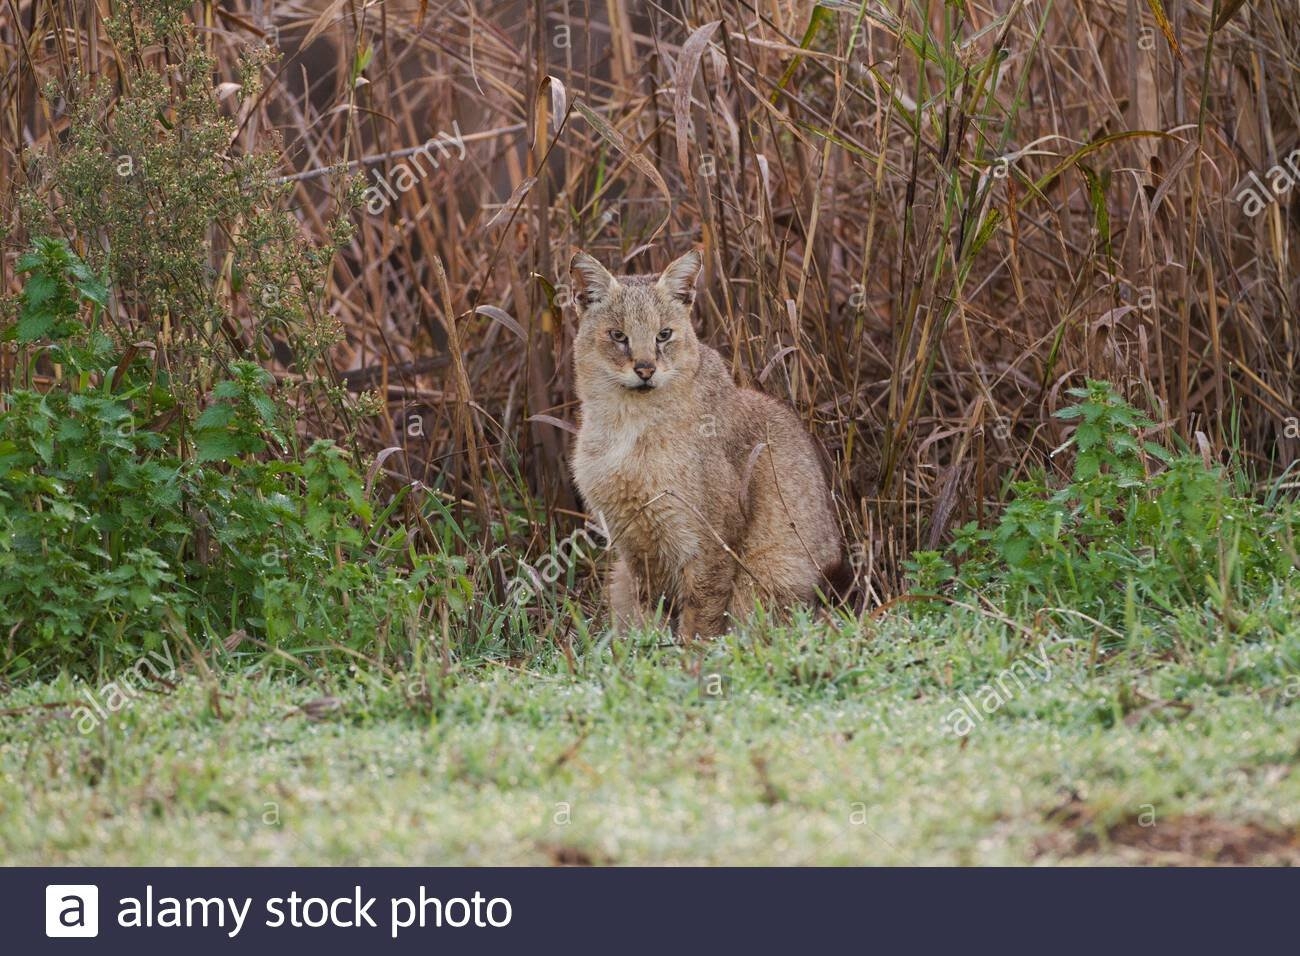 камышовый кот фото дикий где живет